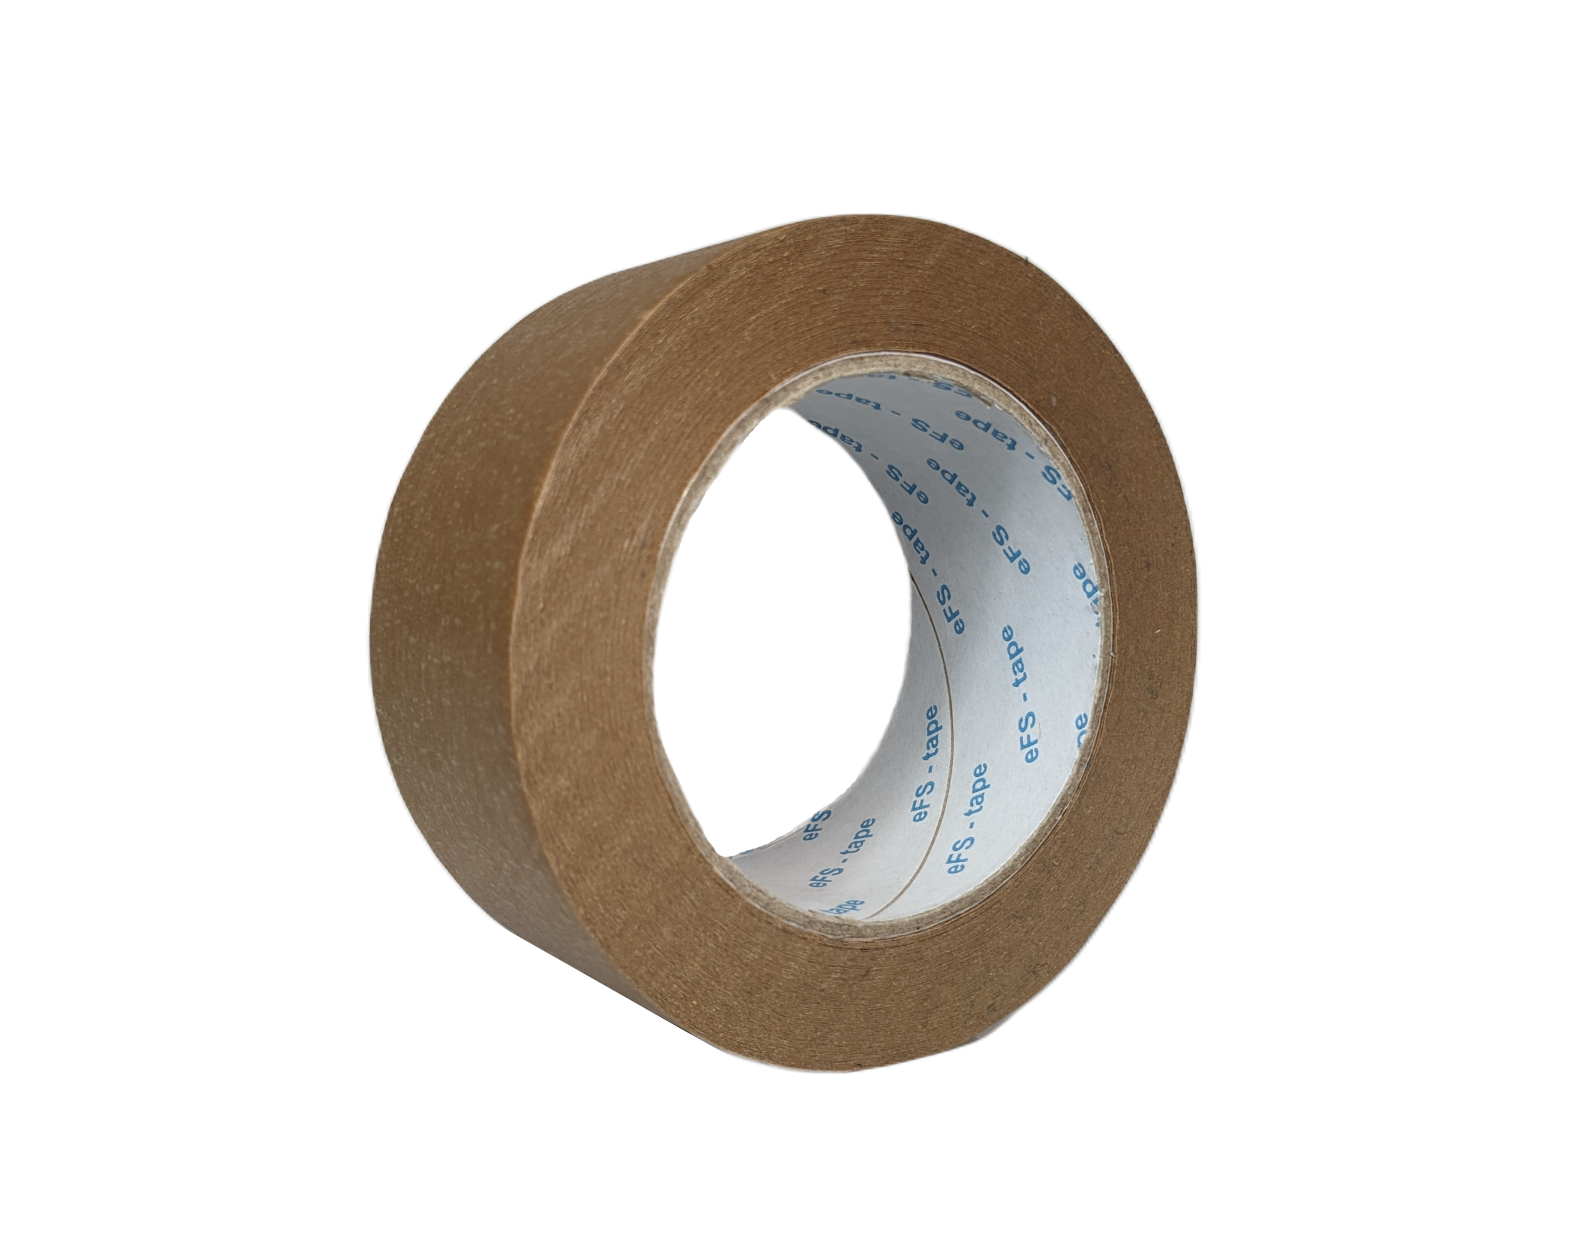 Adhesive paper tape